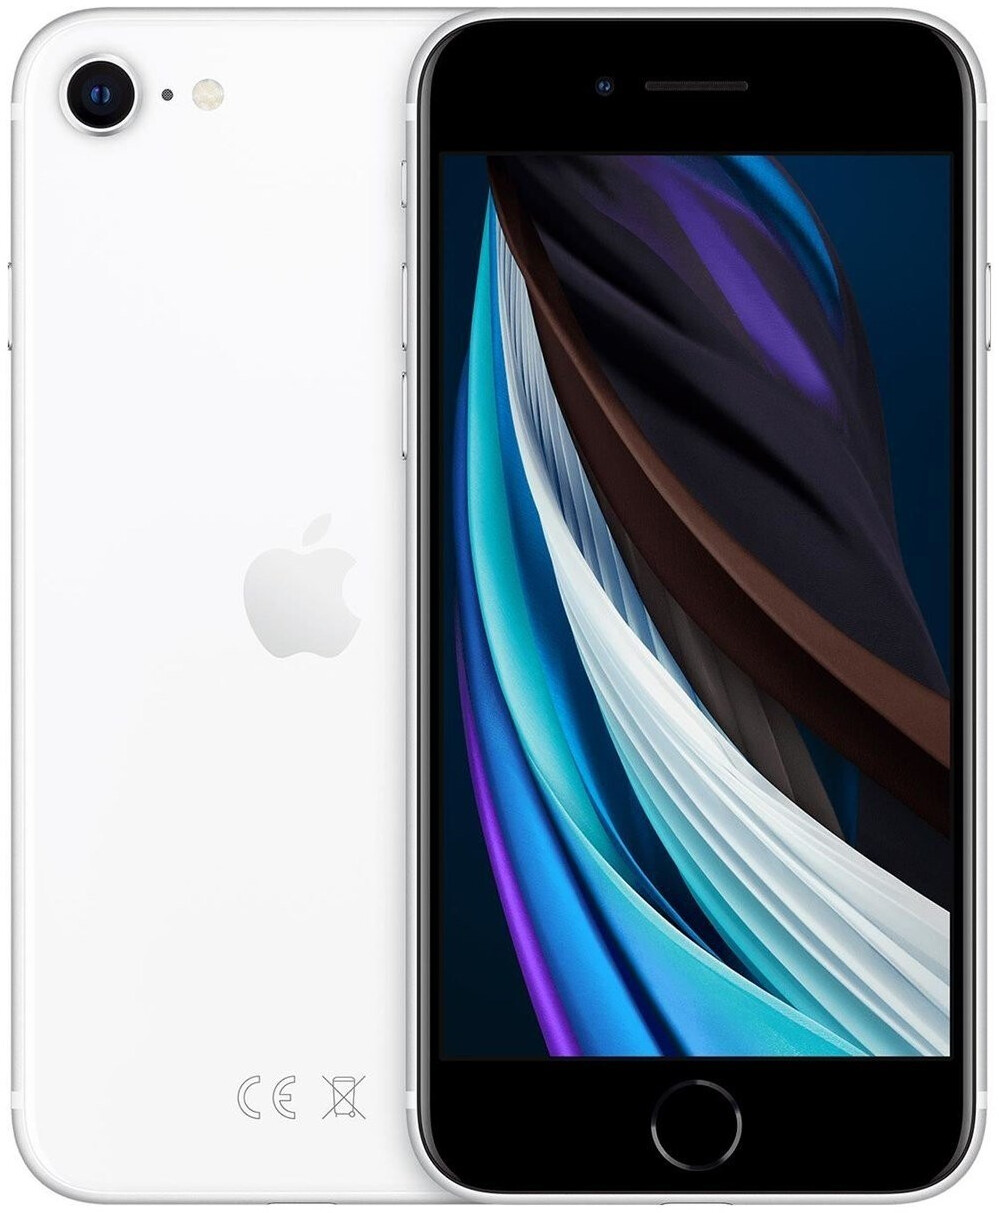 Apple iPhone SE (2020) 128GB White ab 464,00 € (September 2021 Preise